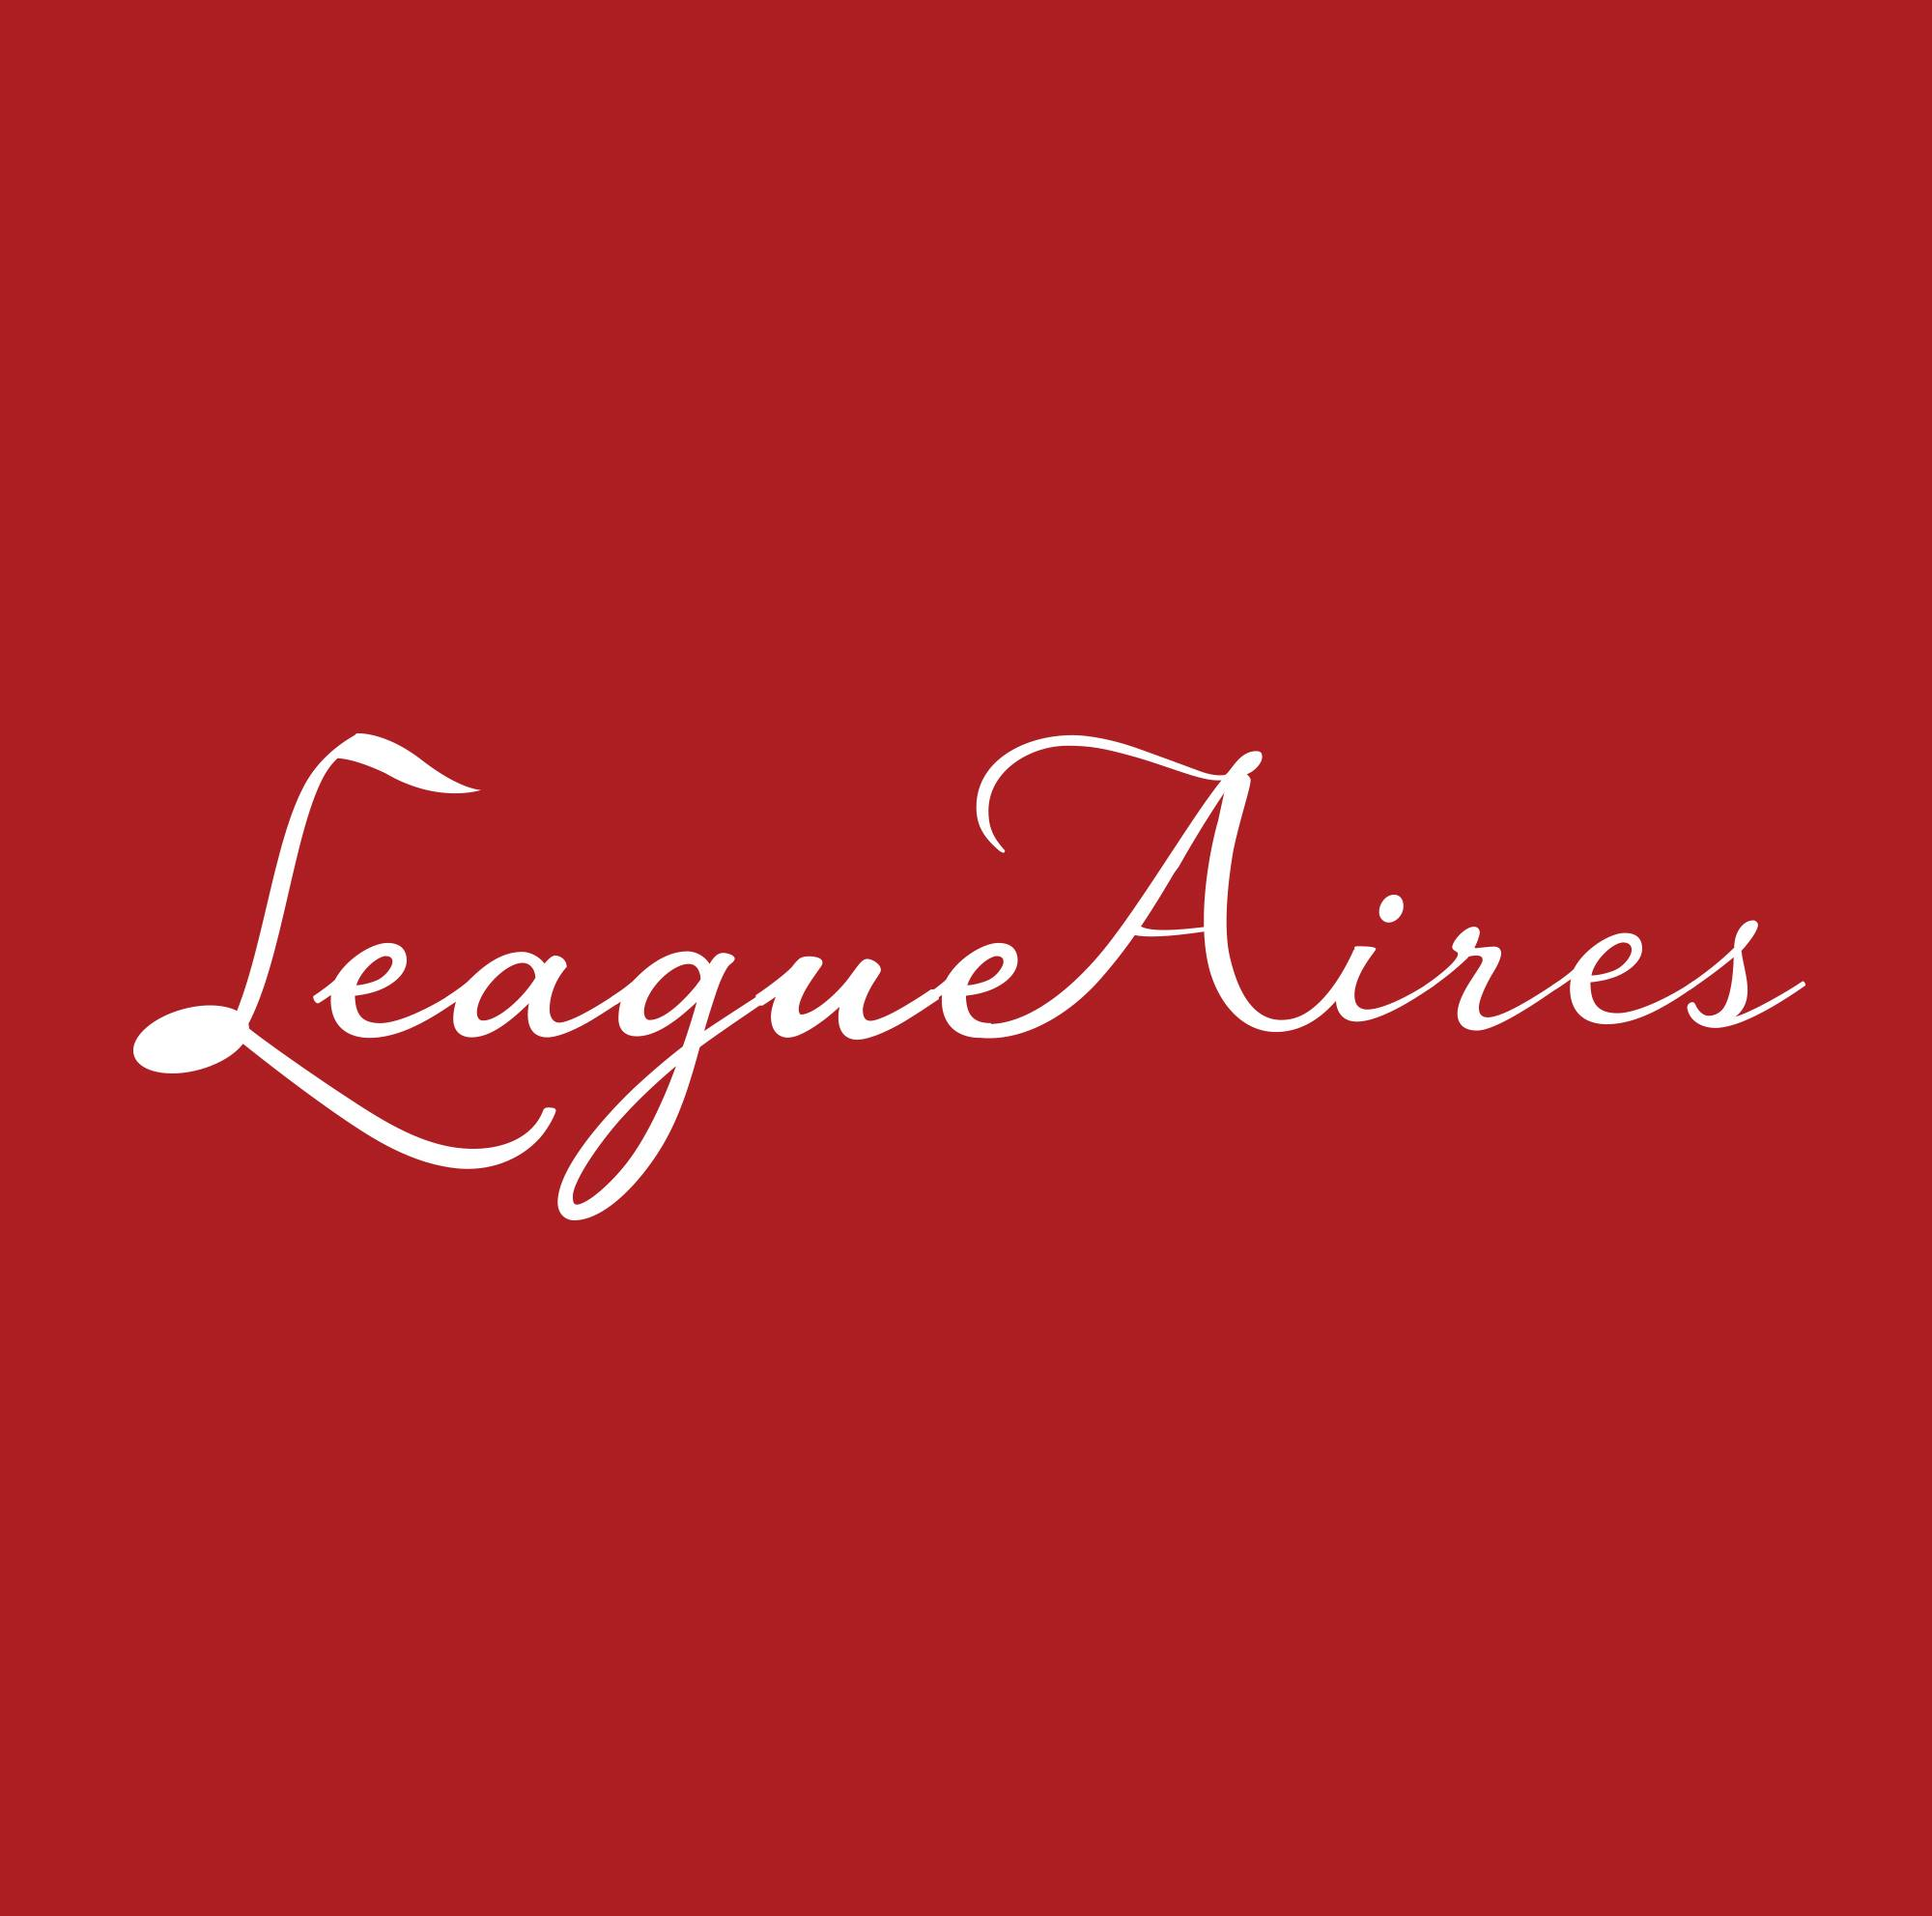 The League.Aires